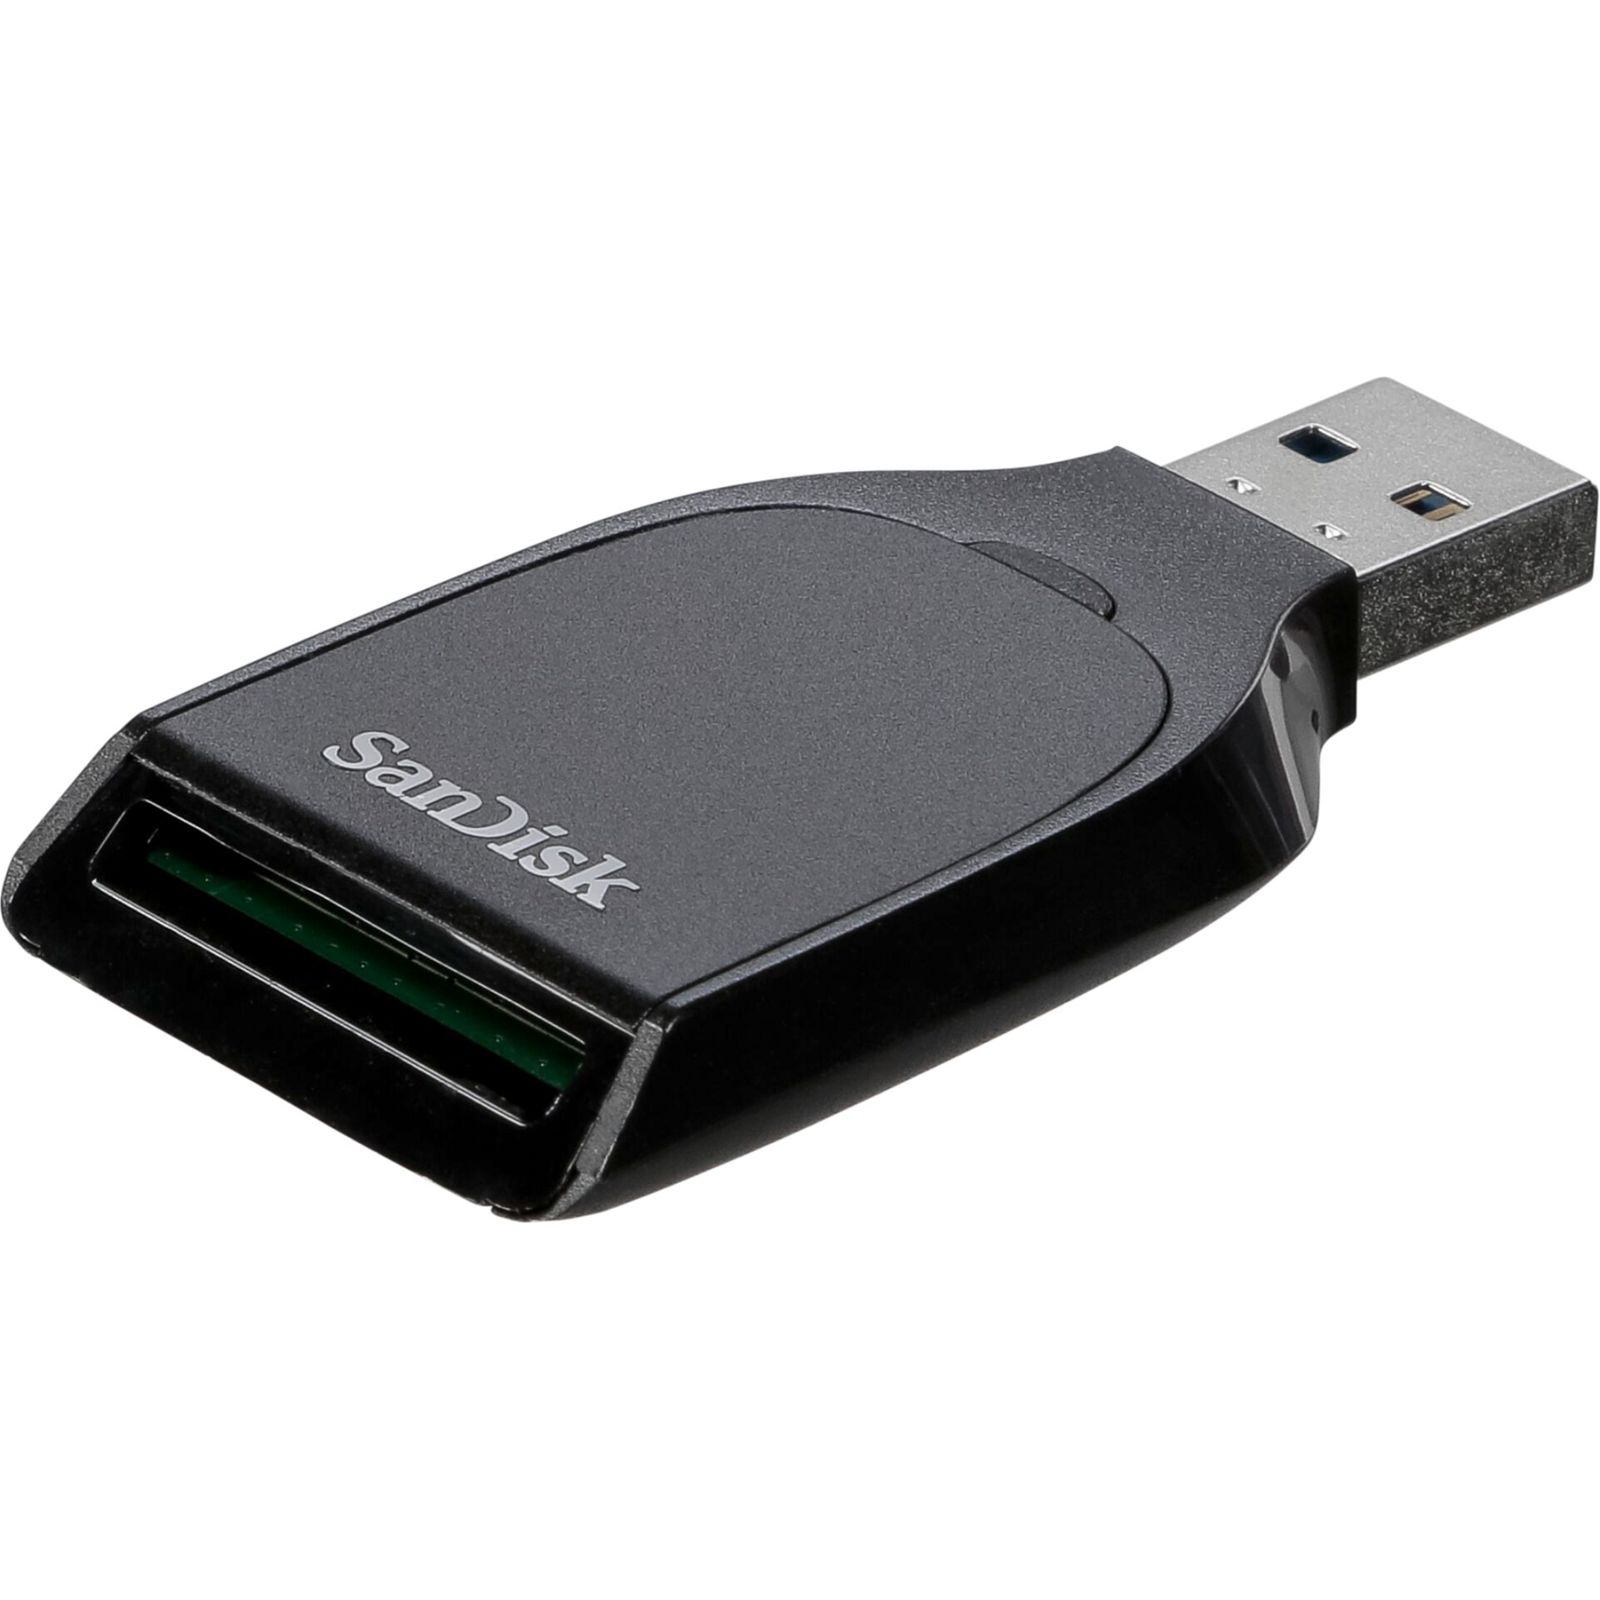 SanDisk SD UHS-I Card Reader 2Y Up to 170 MB/s   SDDR-C531-G